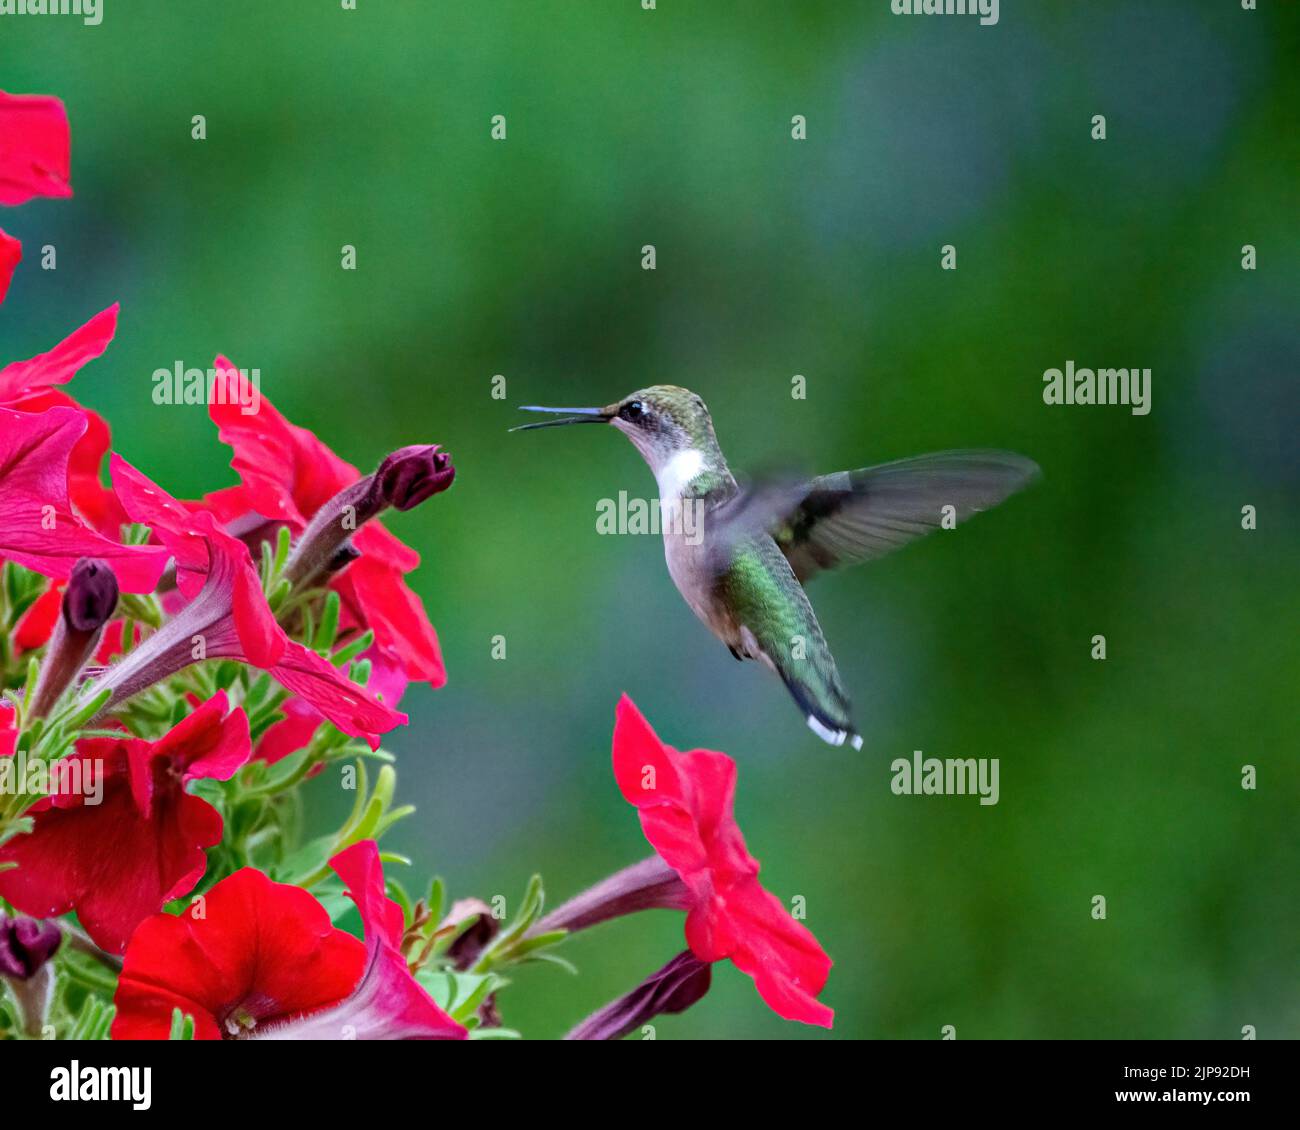 La gorge de rubis de colibri femelle se nourrissant de pétunias avec un fond vert dans son environnement et son habitat entourant l'exposition de la Wingspan. Banque D'Images